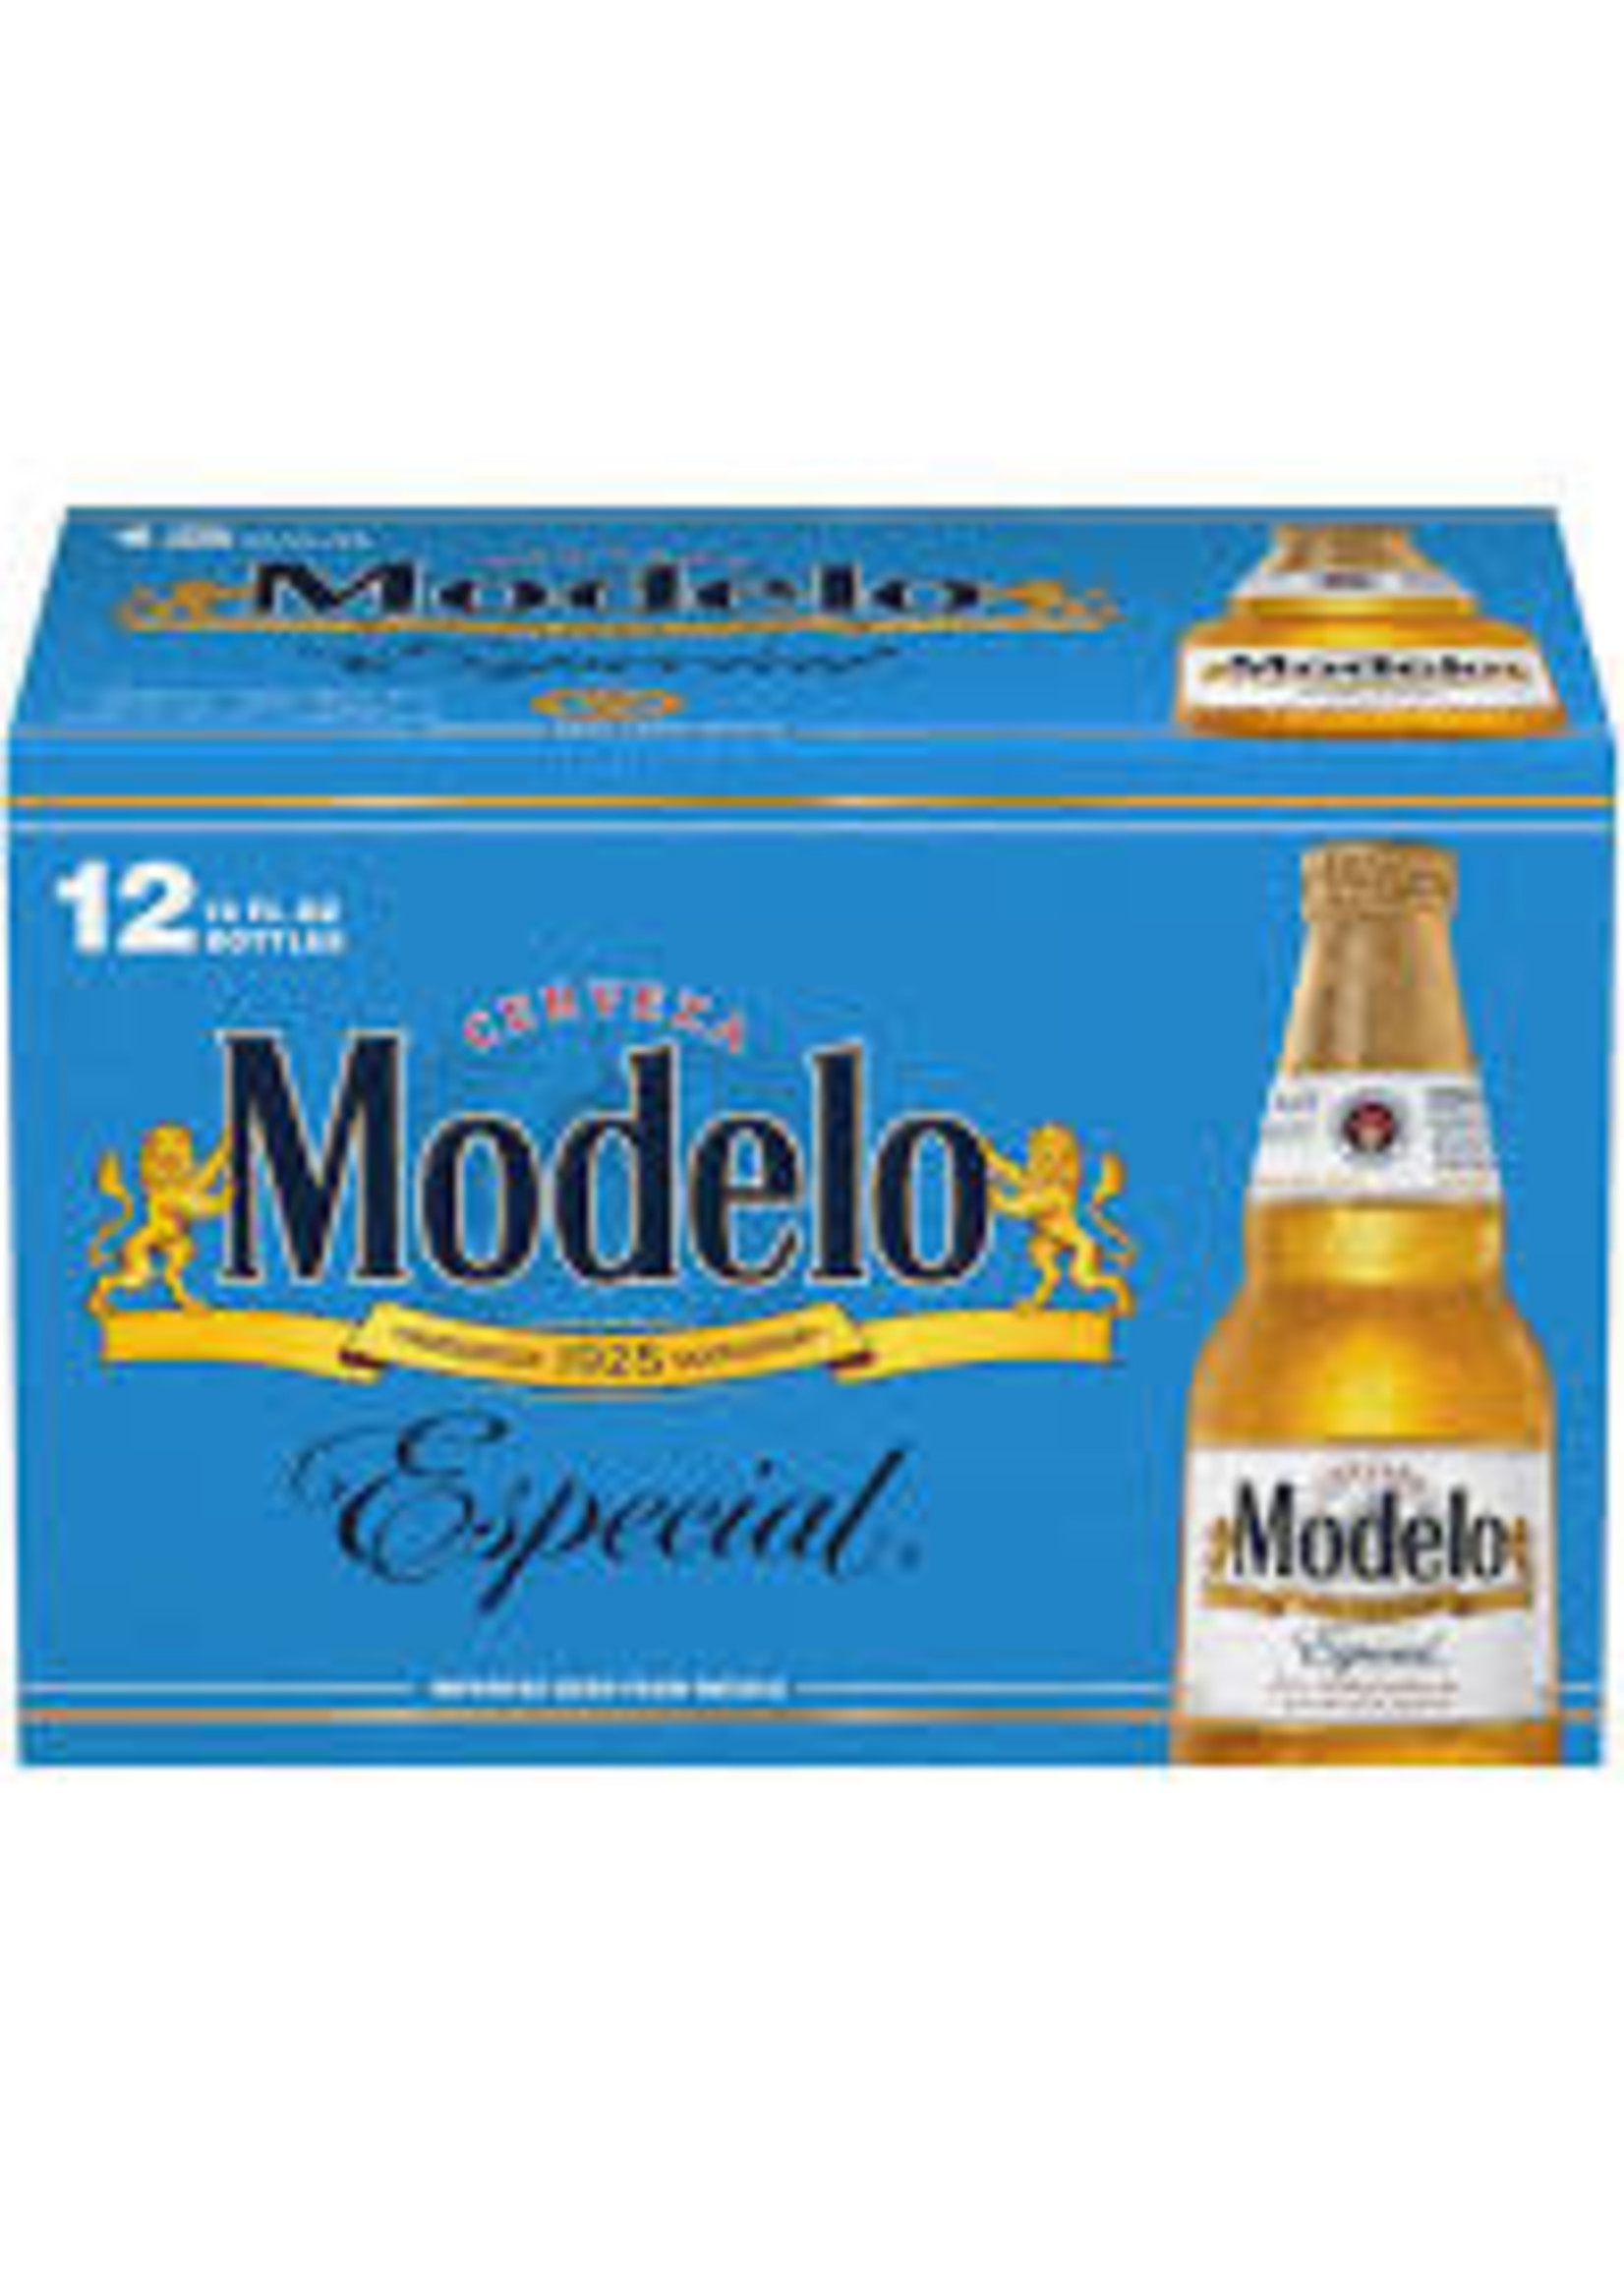 MODELO MODELO	ESPECIAL 12-12 OZ BOTTLES	(12PK)